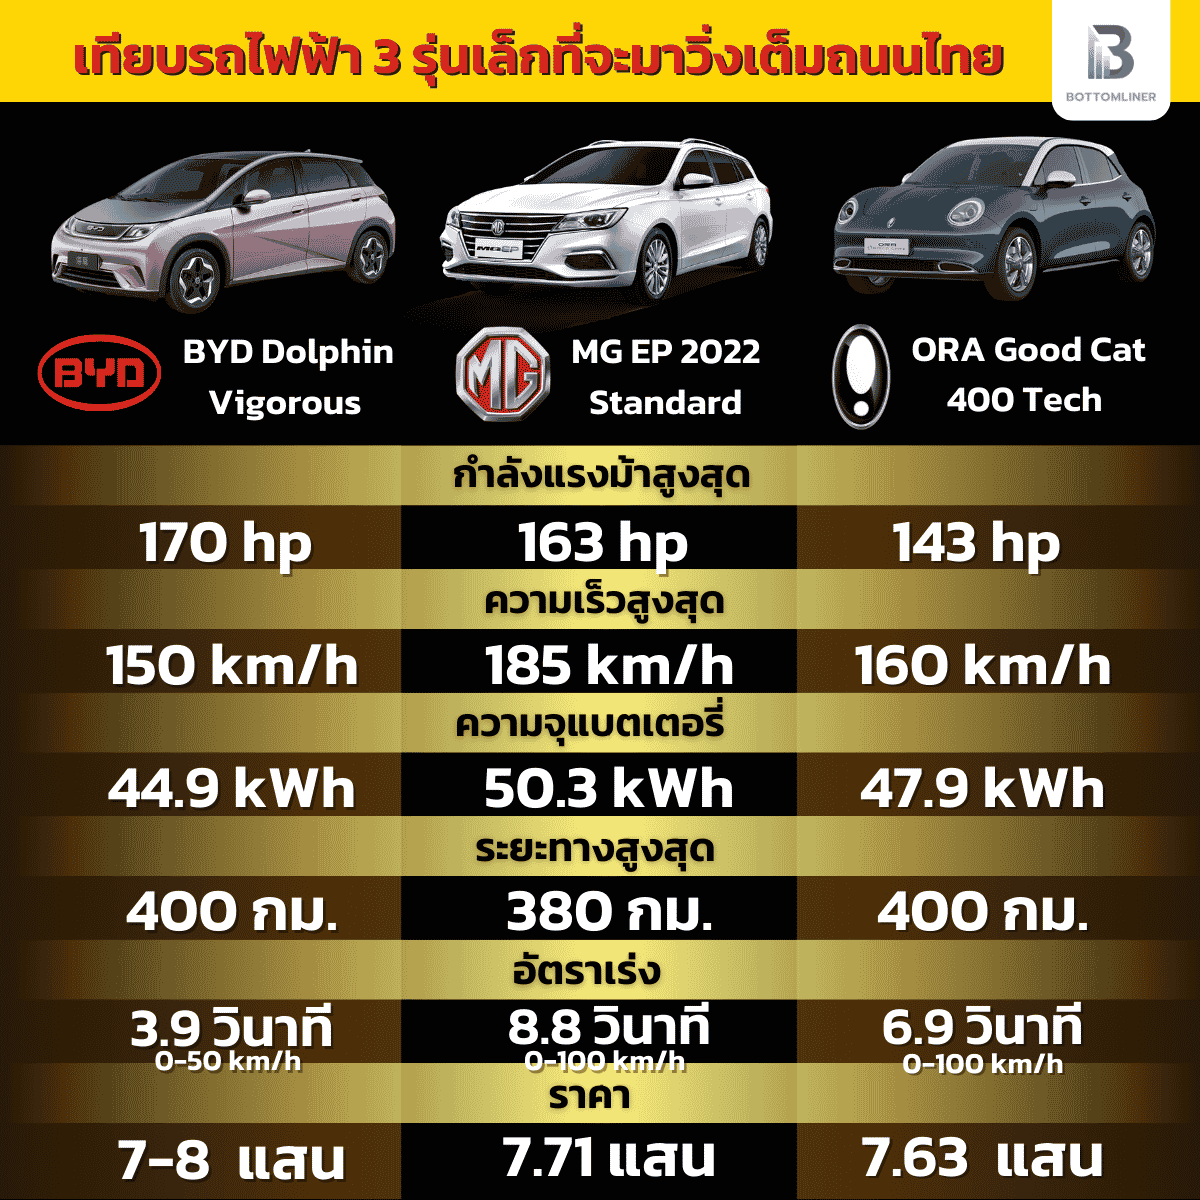 เปรียบเทียบ 3 รถไฟฟ้ารุ่นเล็กที่จะมาวิ่งเต็มถนนไทยเร็ว ๆ นี้ (BYD-MG-ORA)